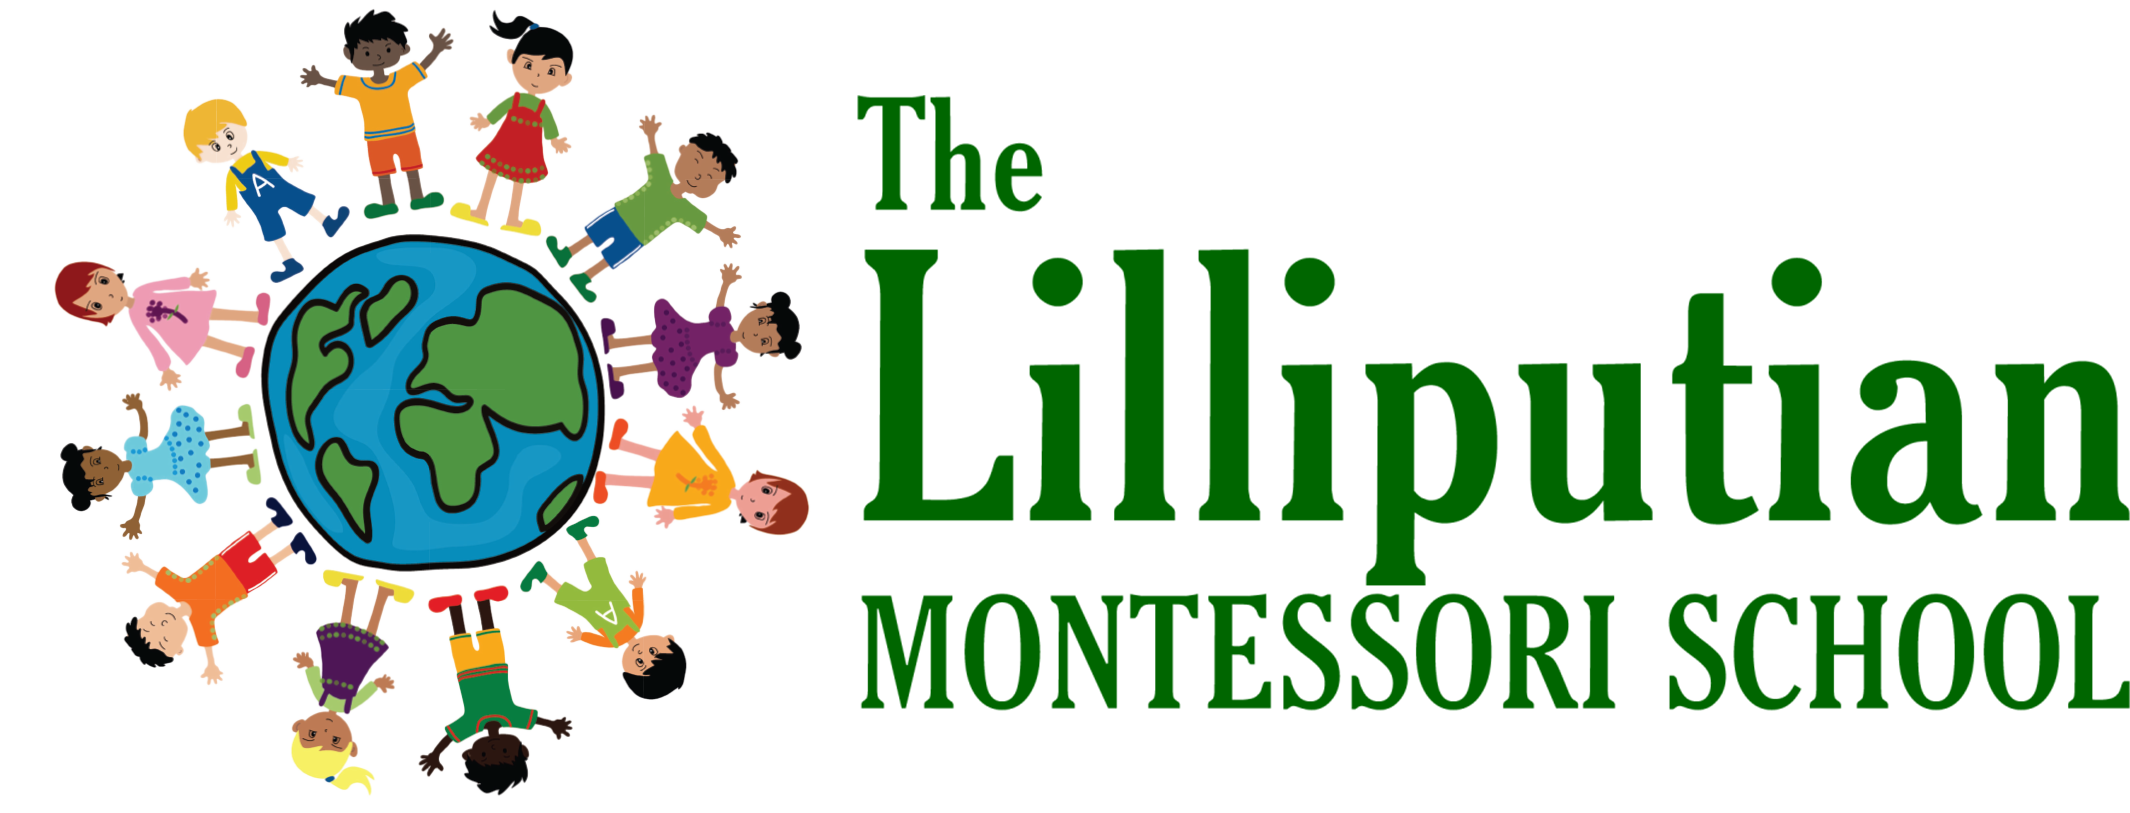 The Lilliputian Montessori School